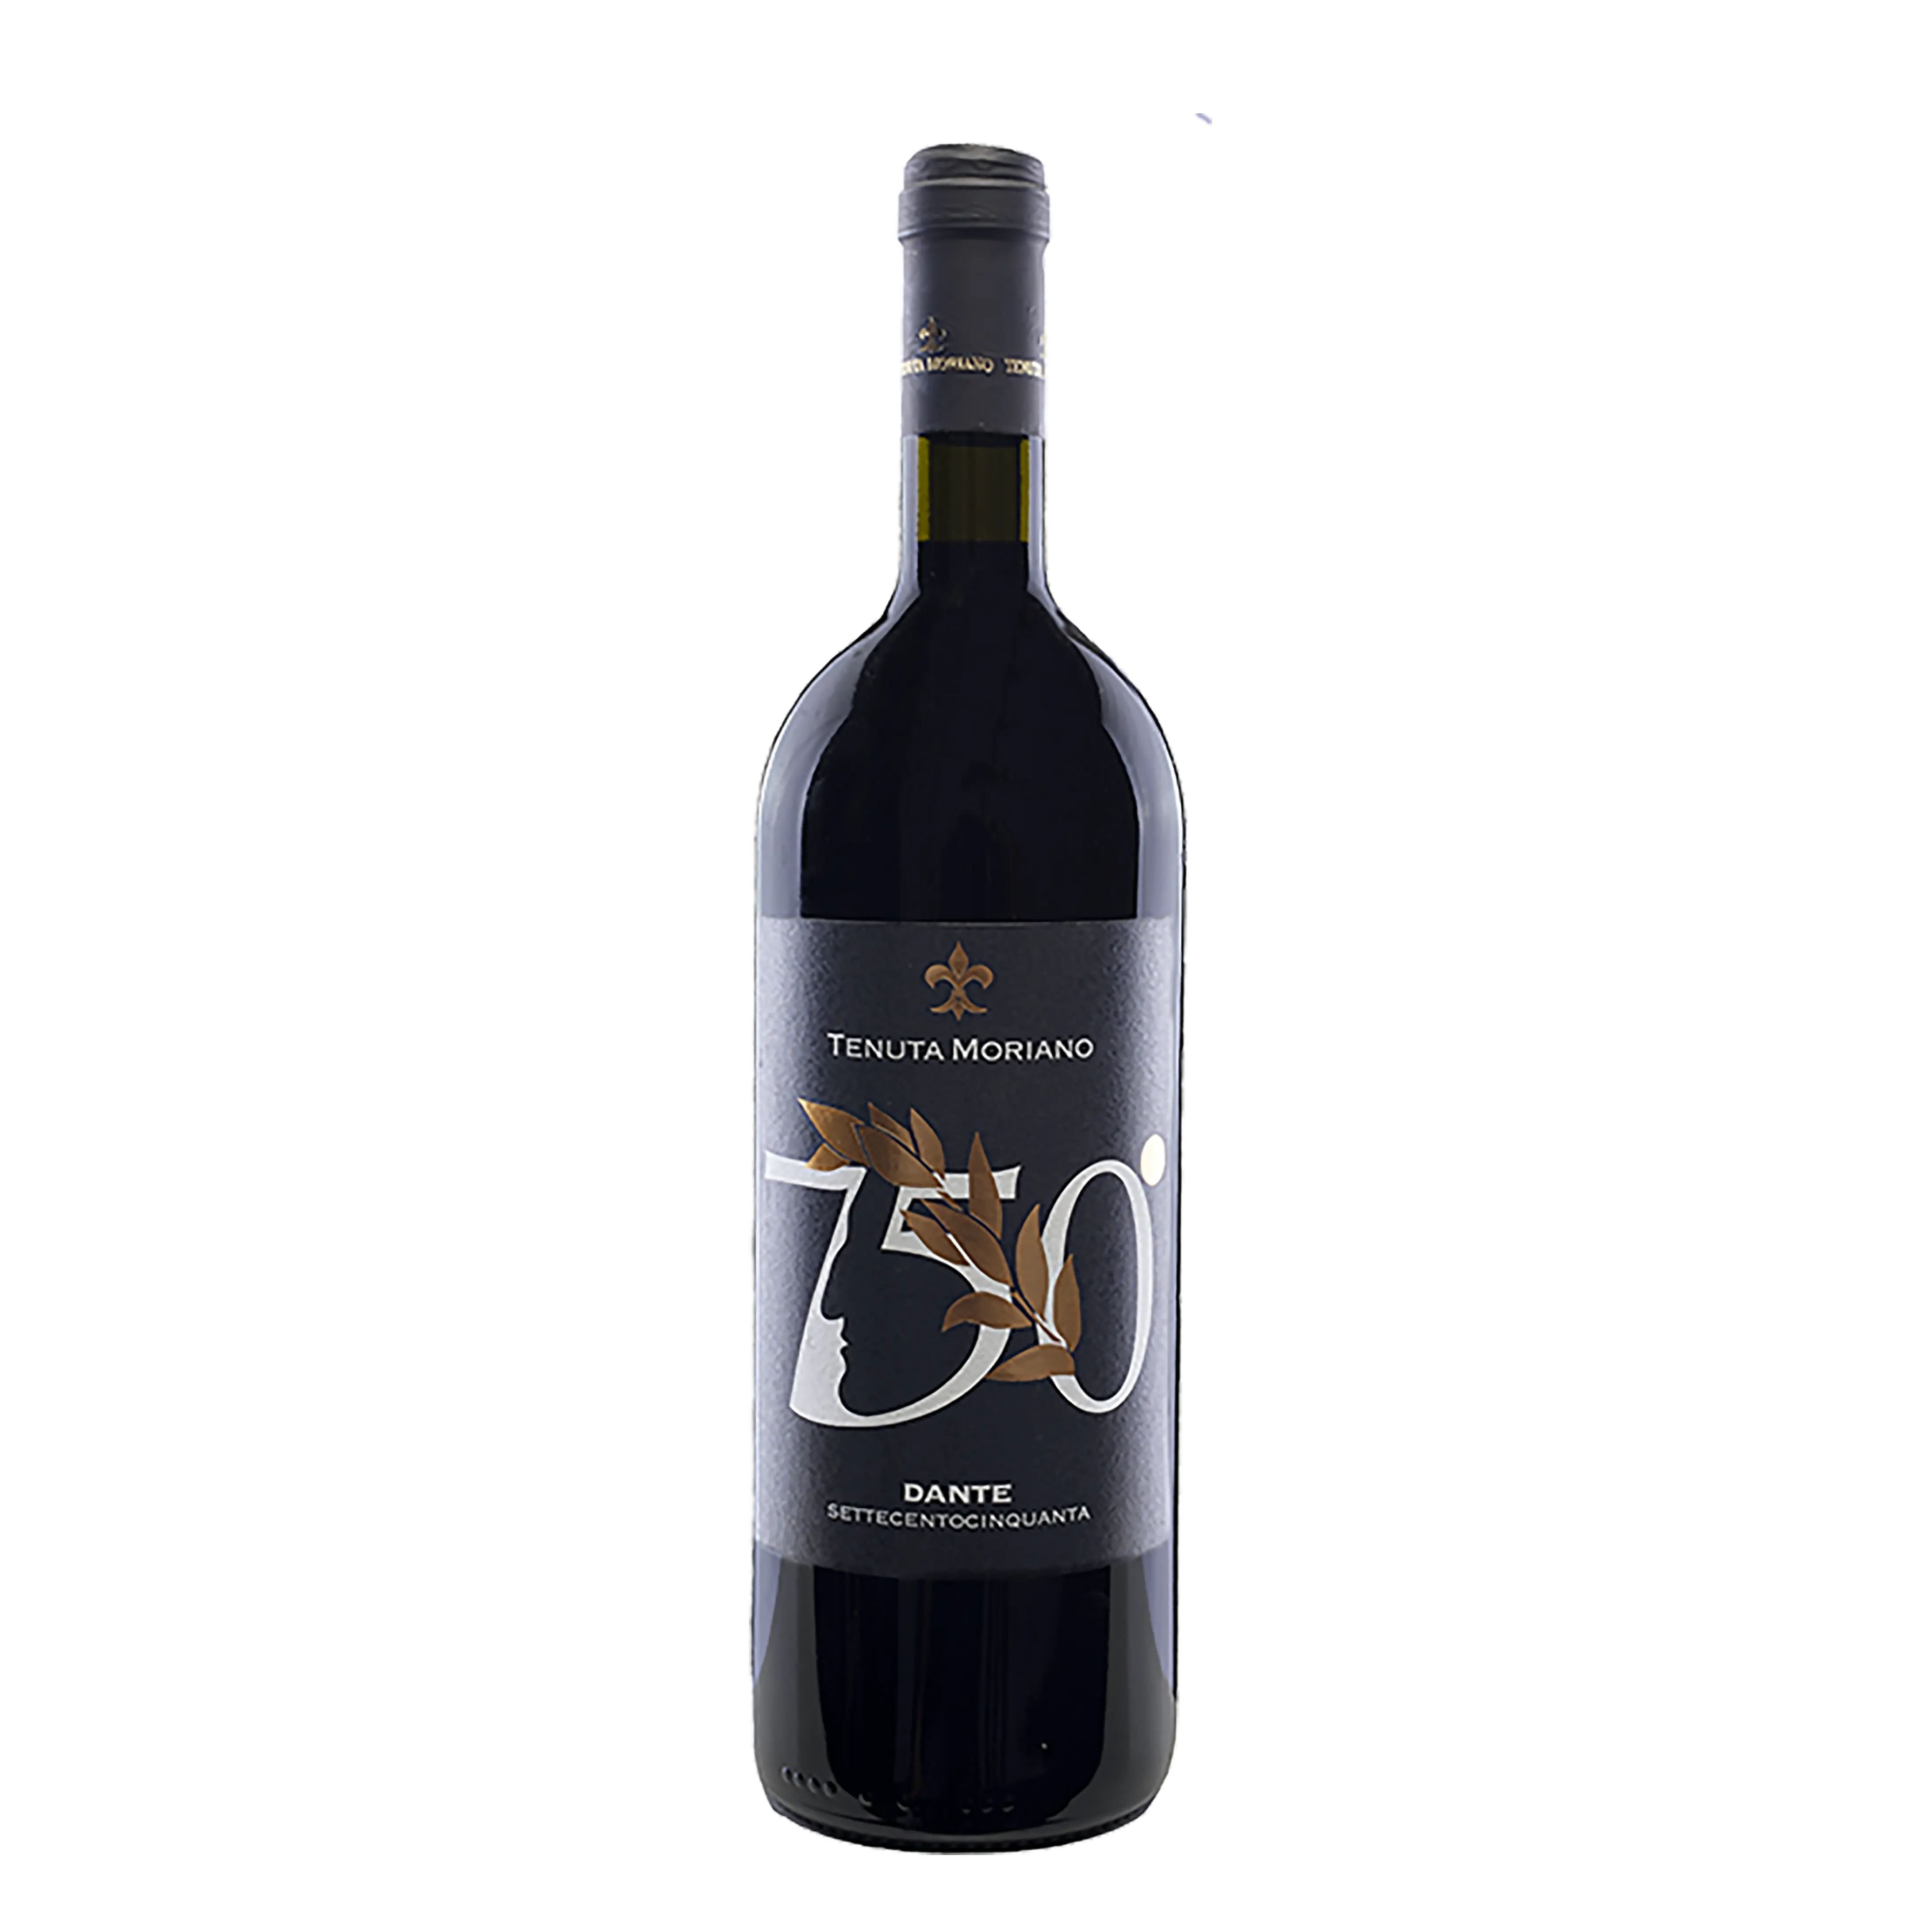 Premium Qualité Toscane Rouge Vin IGT Toscana 2010 Limitée Édition Dante 750th 1 L Boisson Alcoolisée 14,00% Made in Italy